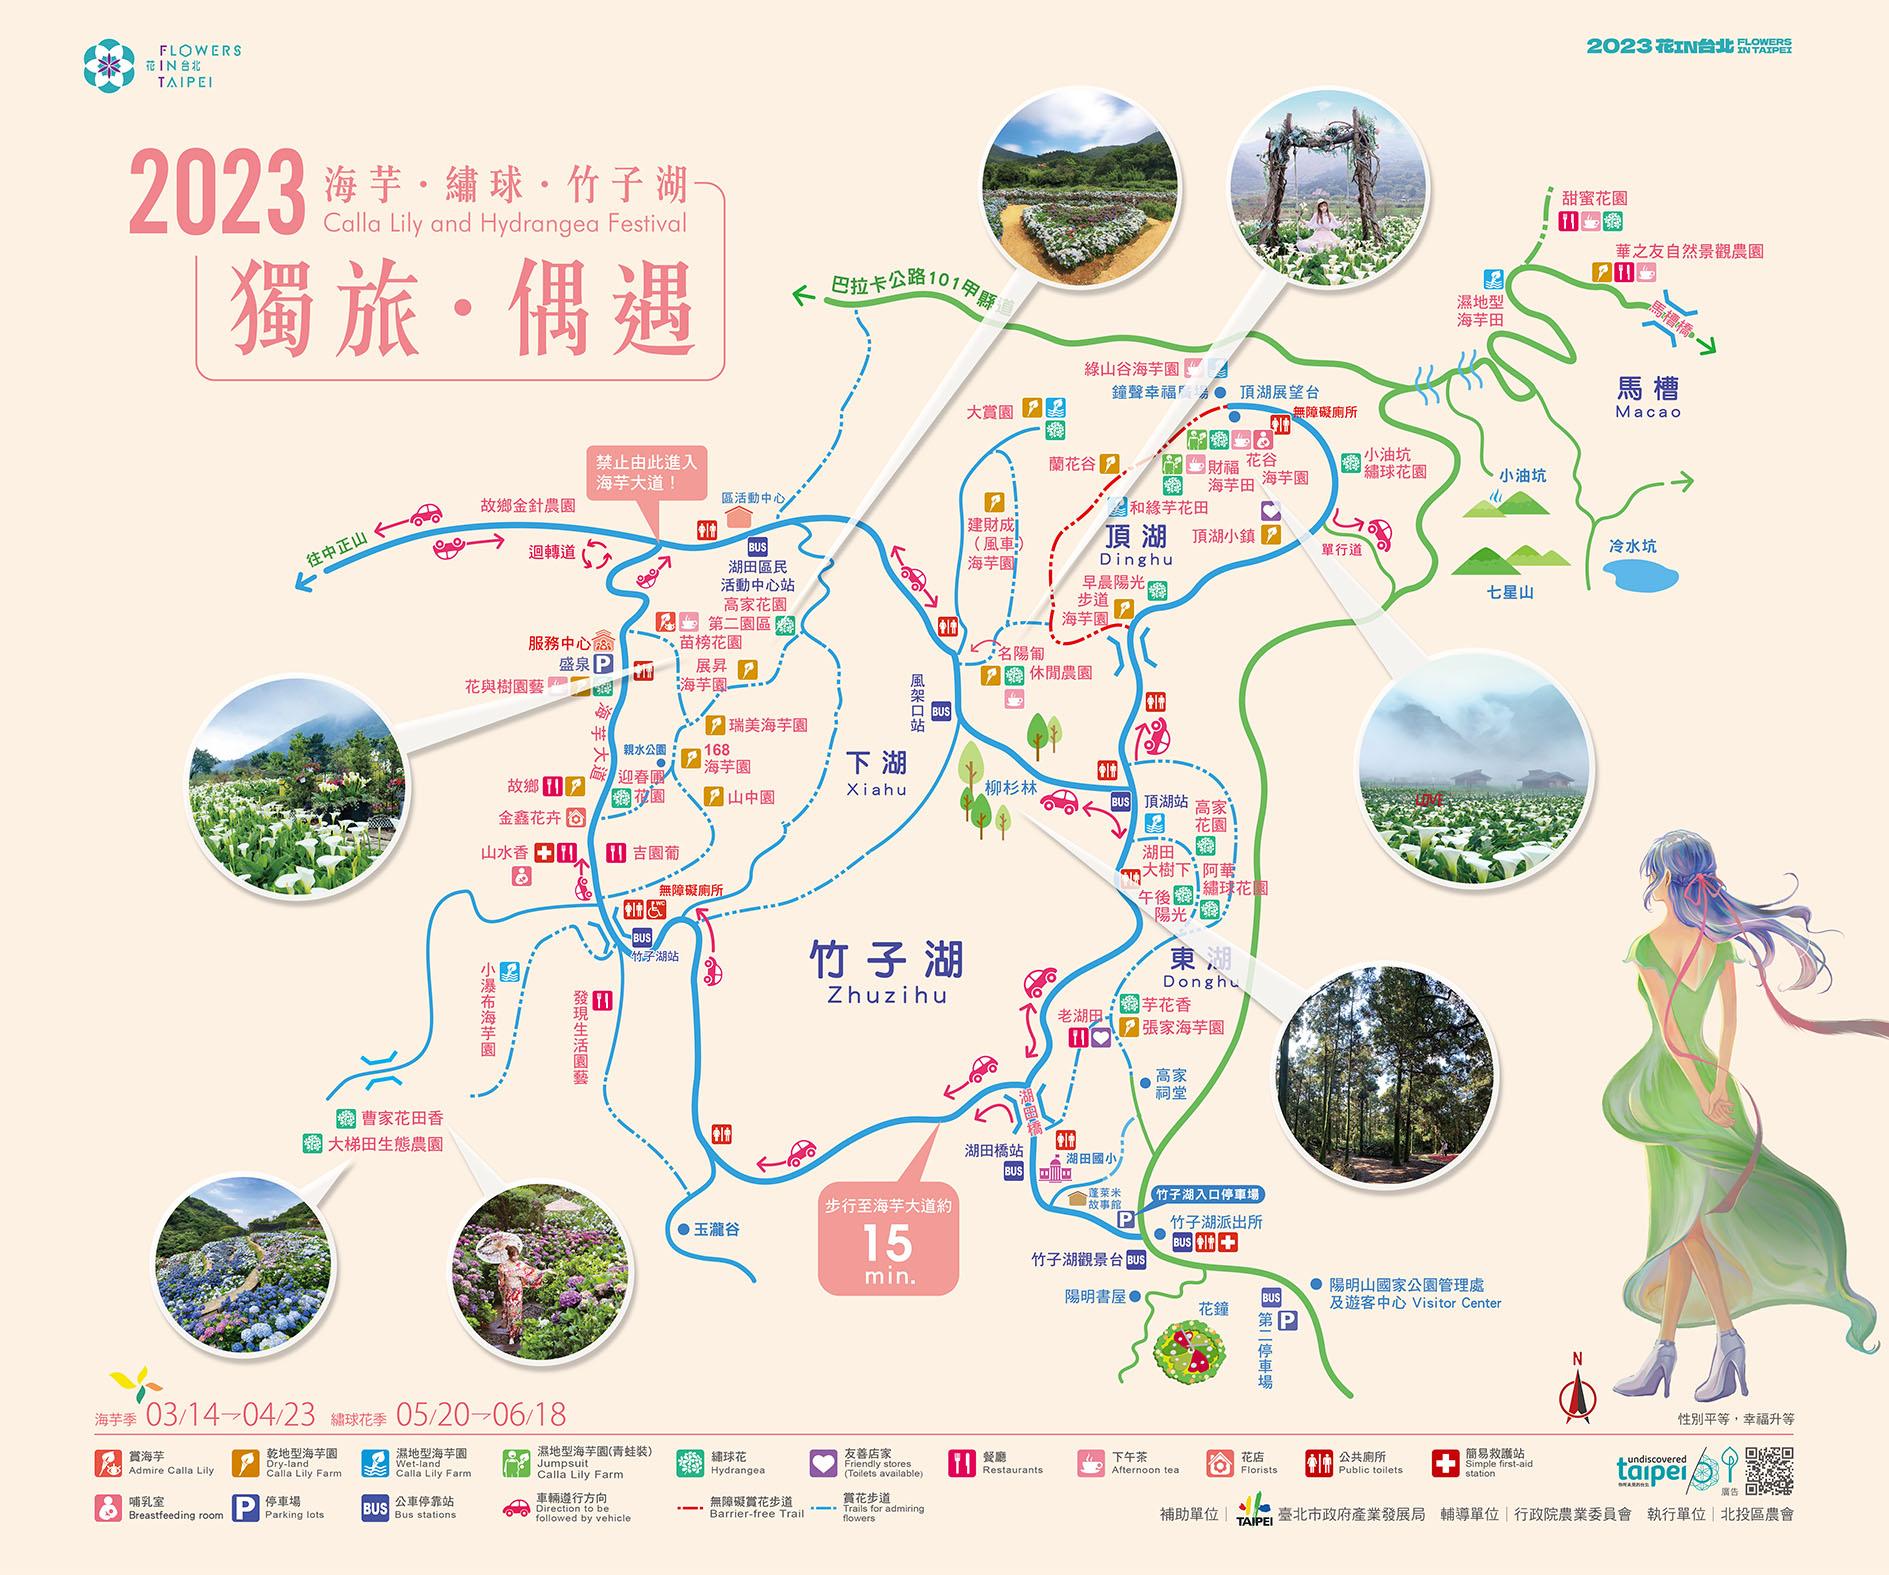 2023 주쯔후 수국 페스티벌(竹子湖繡球花季) 지도.jpg